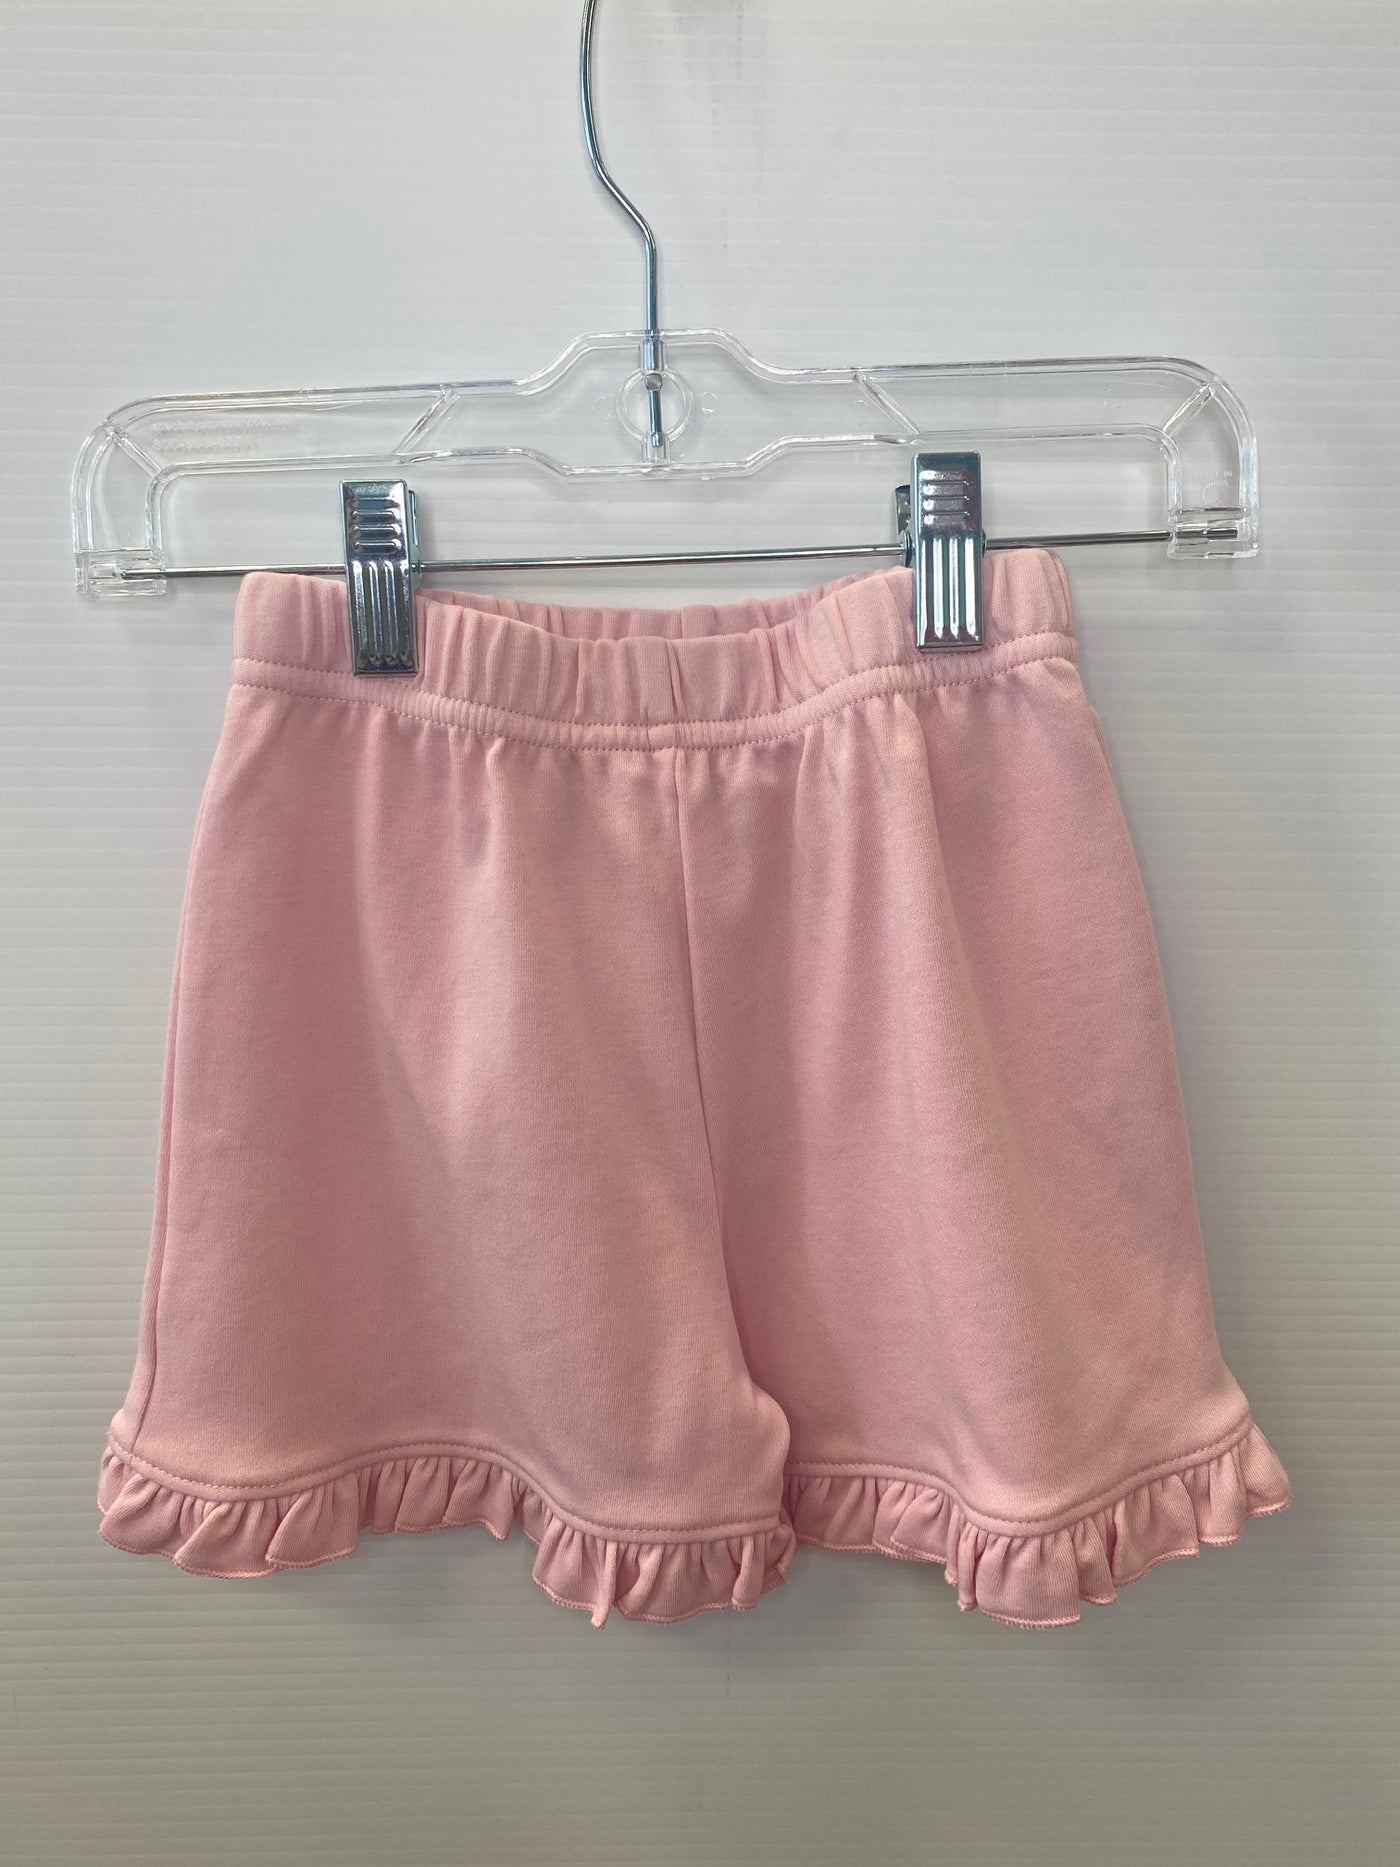 Ruffle shorts-light pink